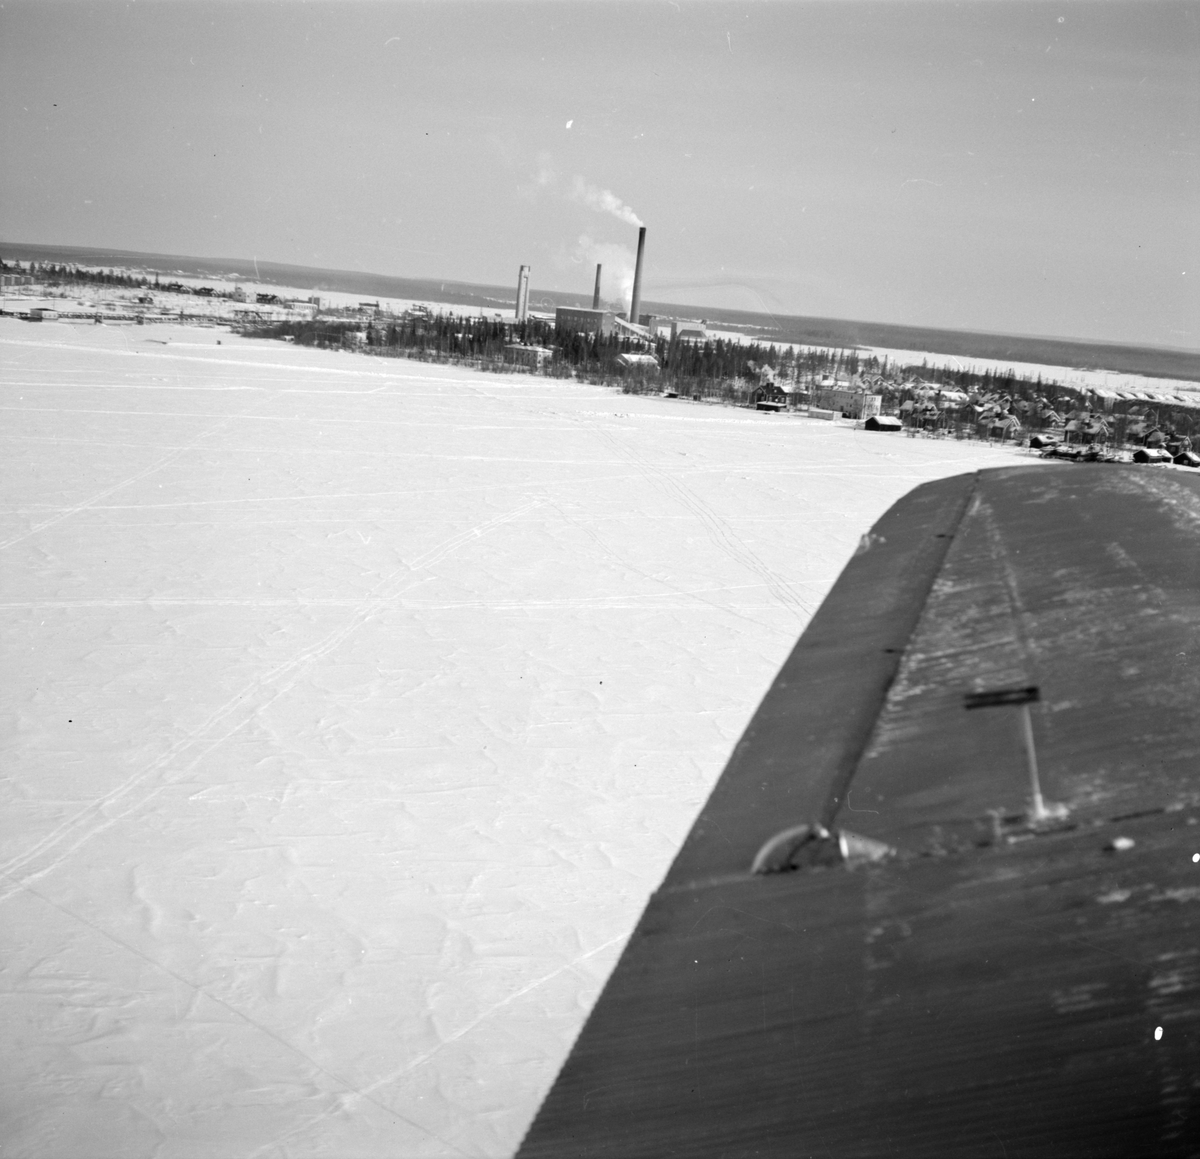 Flygfotografi av Veitsiluoto samhälle. Bild från F 19, Svenska frivilligkåren i Finland. Med flygplansvinge av flygplan Junkers F-13 i förgrunden.